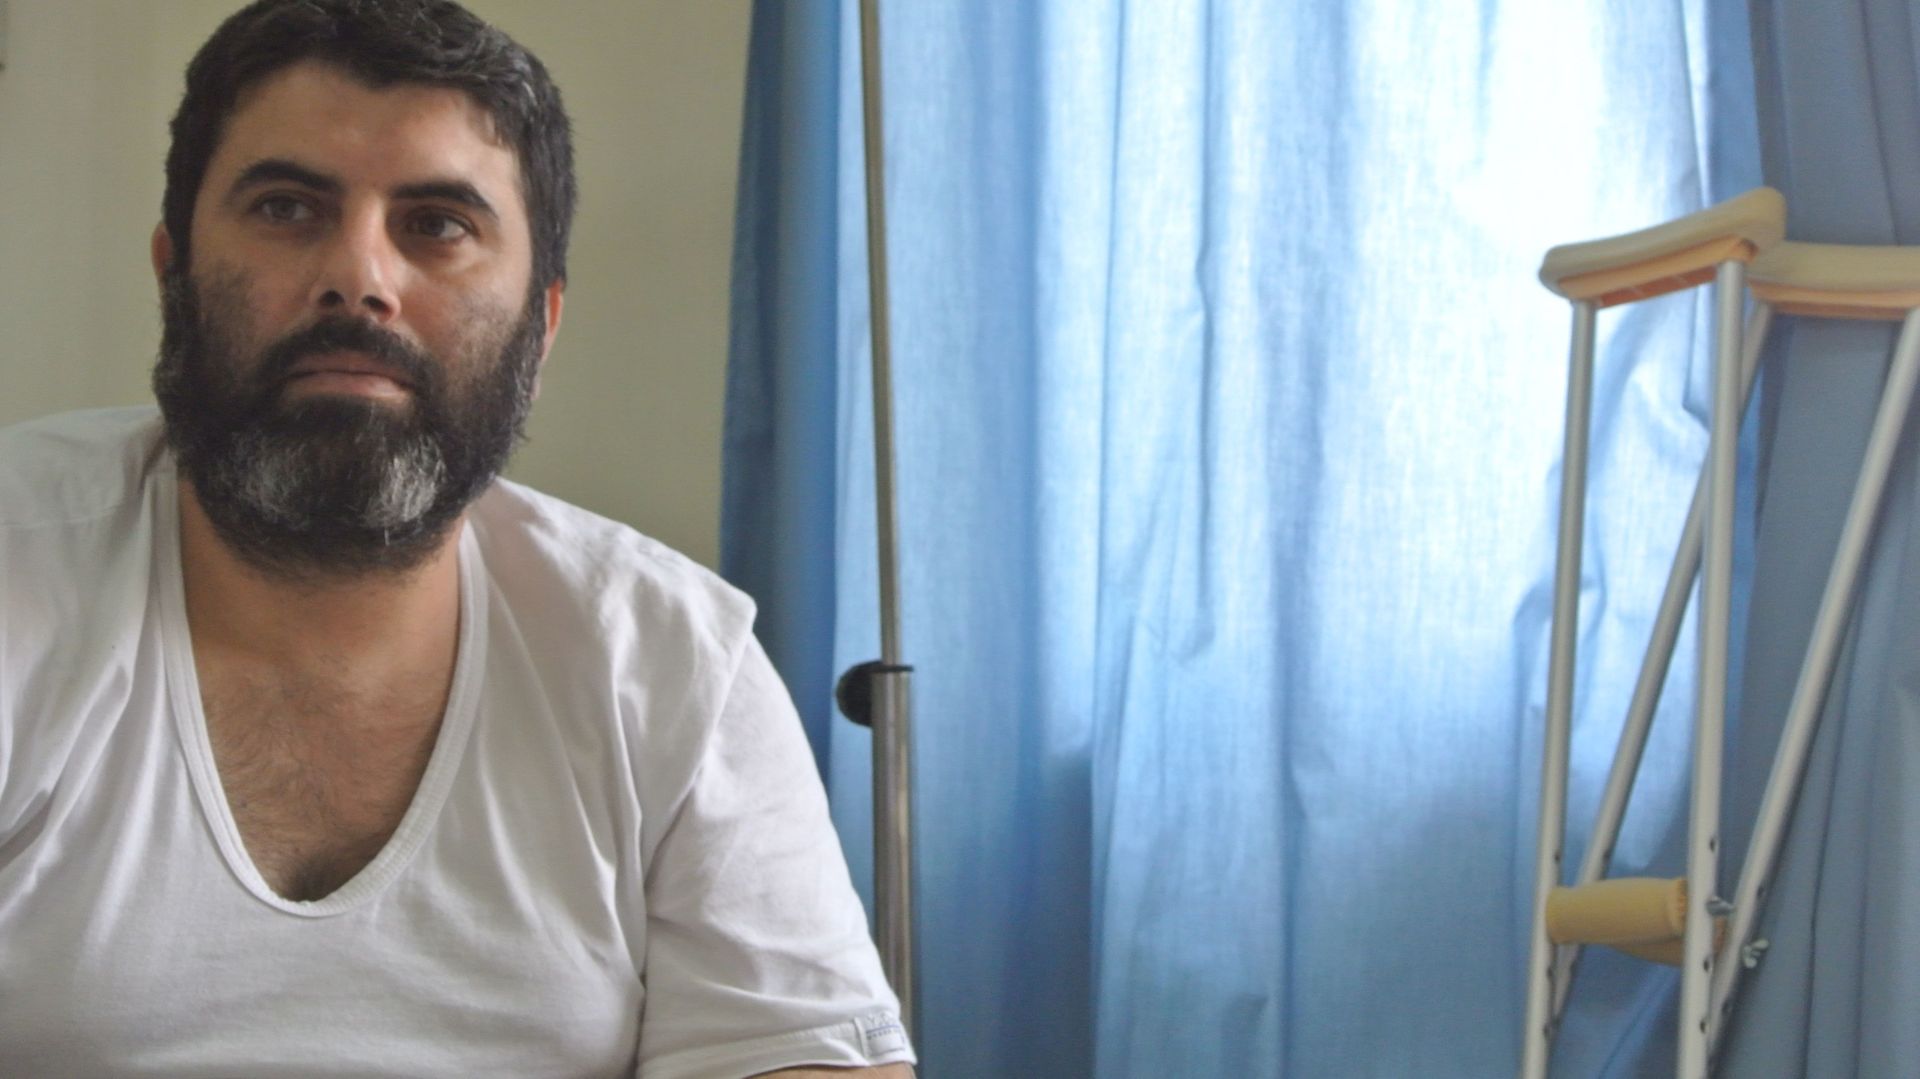 Blessé par un bombardement, cet homme bénéficie de chirurgie reconstructive et d'une aide psychologique dans l’hôpital MSF de Amman.